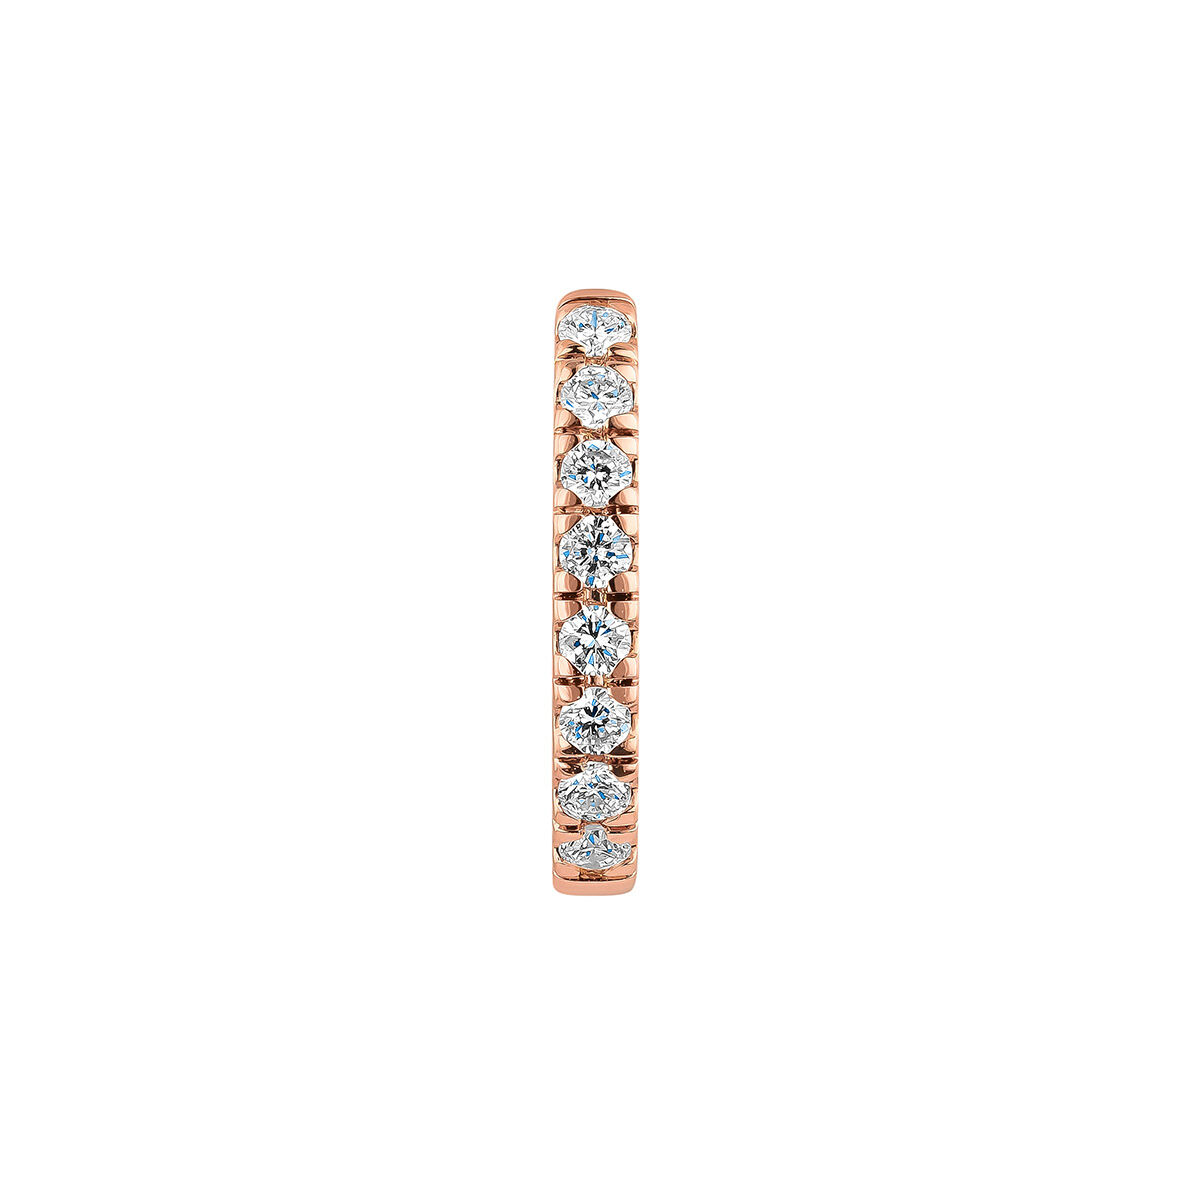 Pendiente individual aro pequeño de oro rosa de 18kt con diamantes de 0,08cts, J00597-03-NEW-H, hi-res